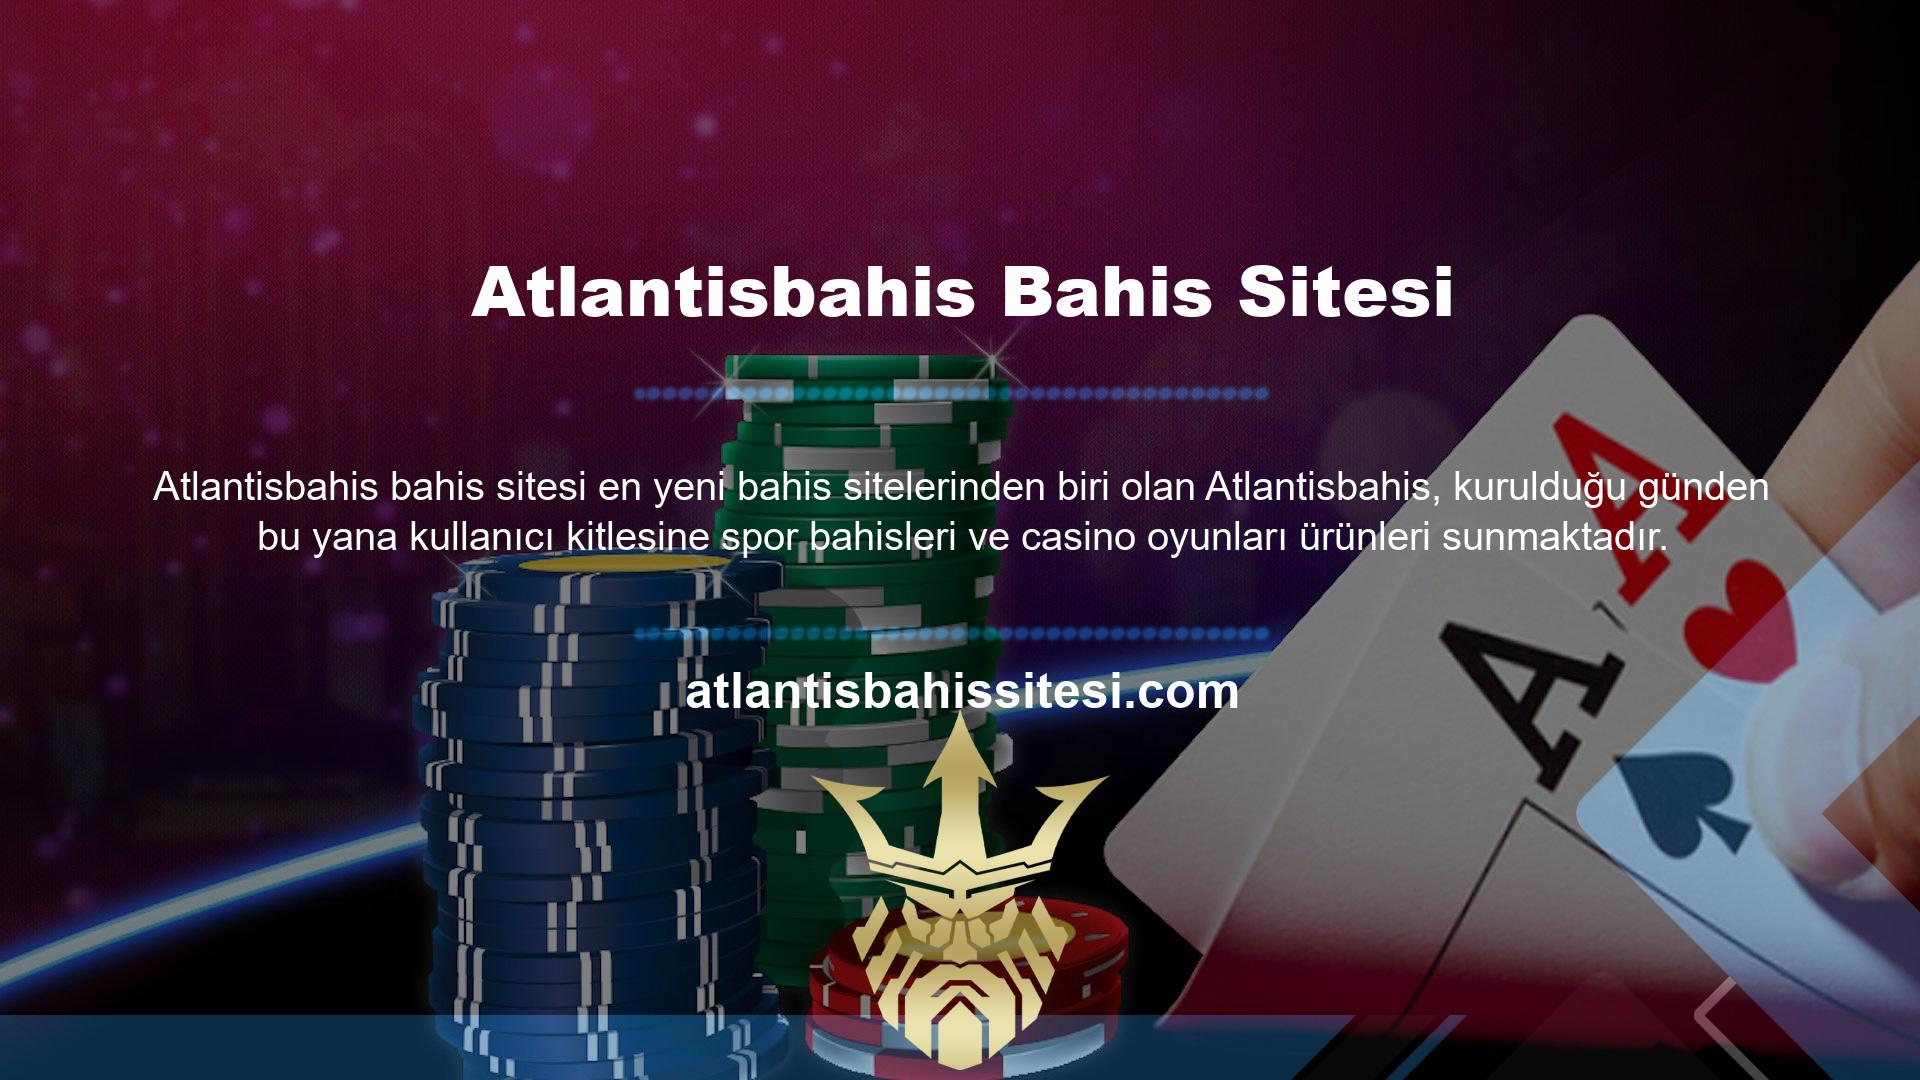 Bahis tutkunları, Türkiye'de Gaming Toto başkanının onayı olmadan yayın yapan her türlü online casino sitesinin yasa dışı olduğunun bilincindedir